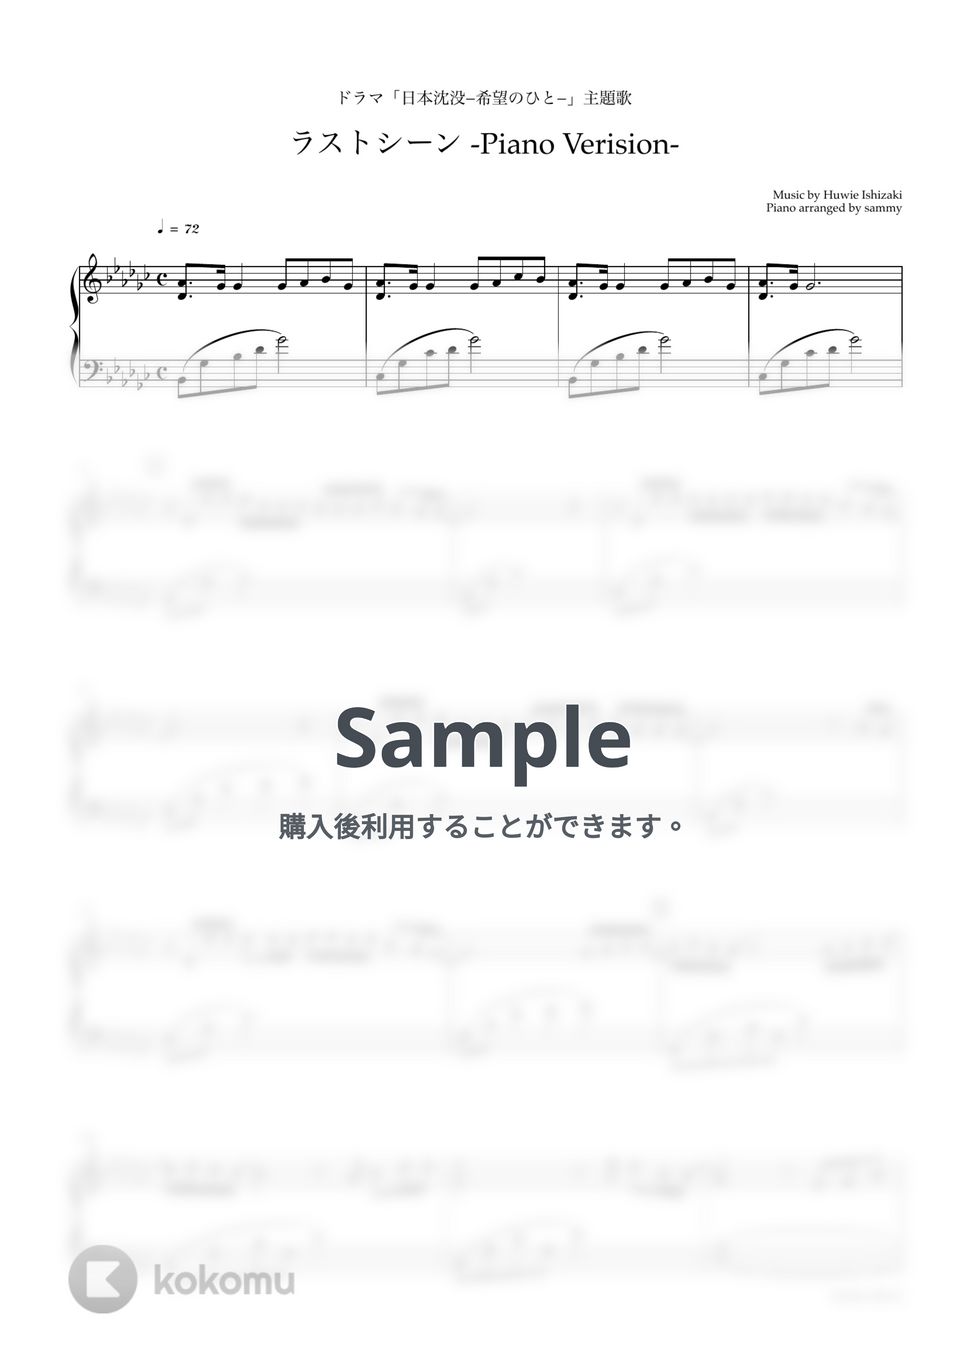 菅田将暉 - ラストシーン -Piano Version- by sammy